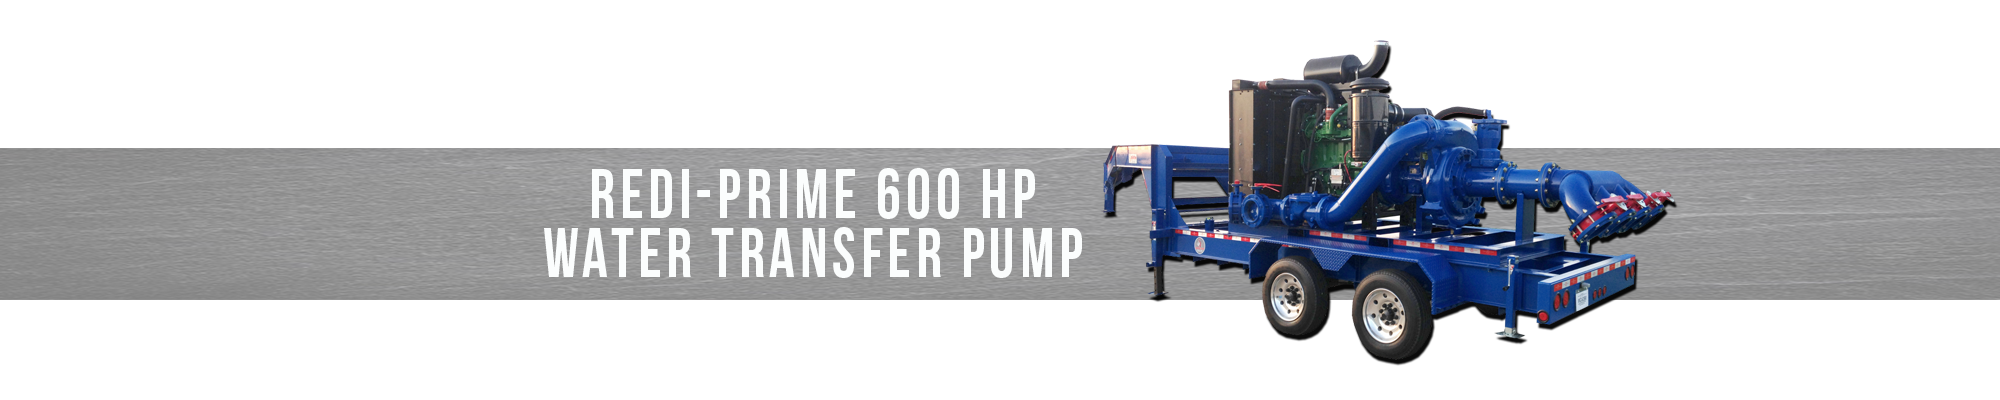 Redi-Prime 600 HP Water Transfer Pump